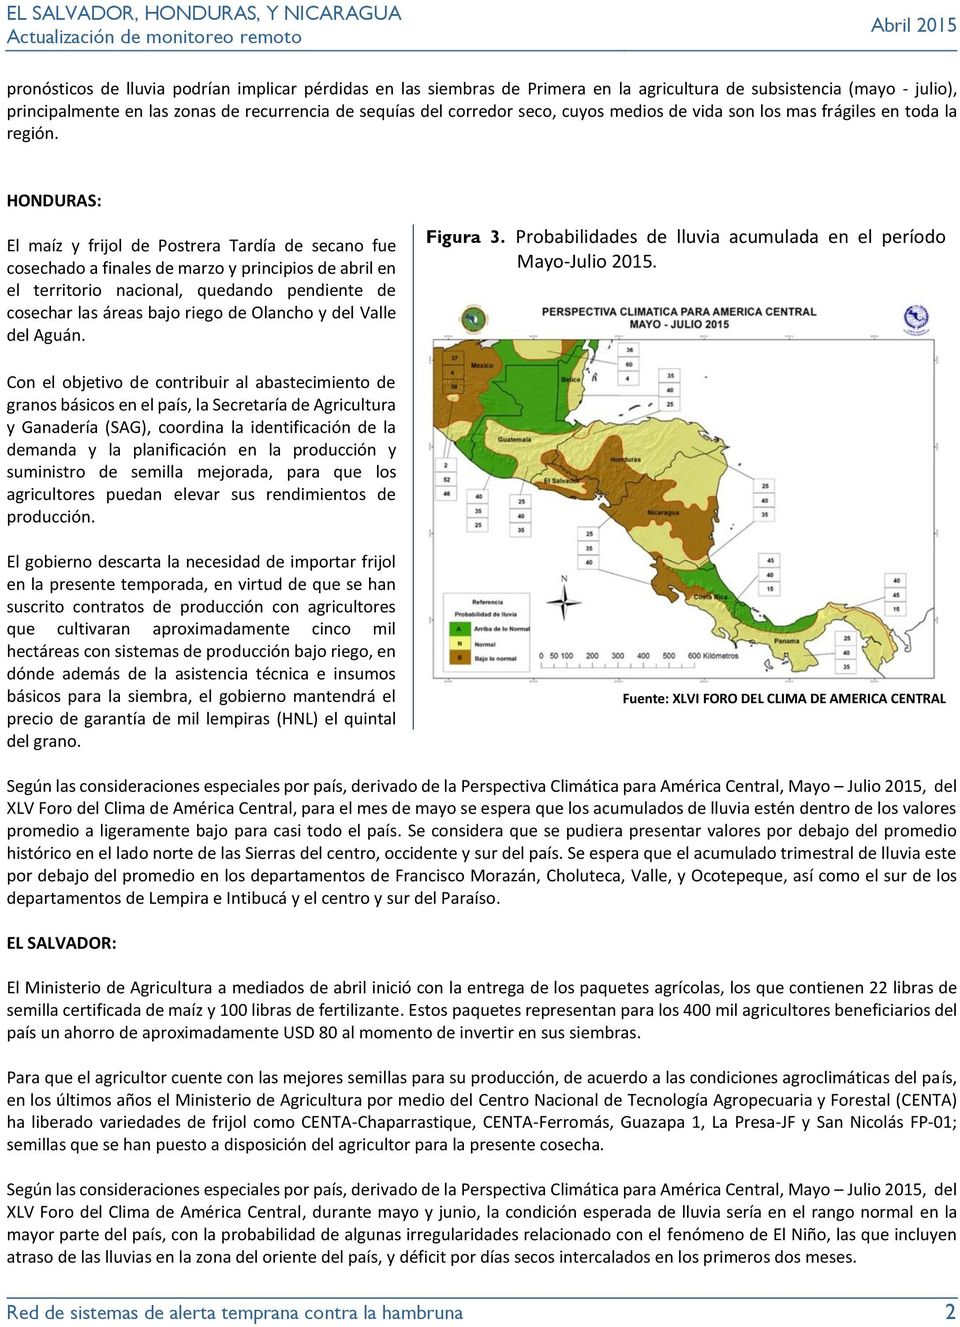 HONDURAS: El maíz y frijol de Postrera Tardía de secano fue cosechado a finales de marzo y principios de abril en el territorio nacional, quedando pendiente de cosechar las áreas bajo riego de